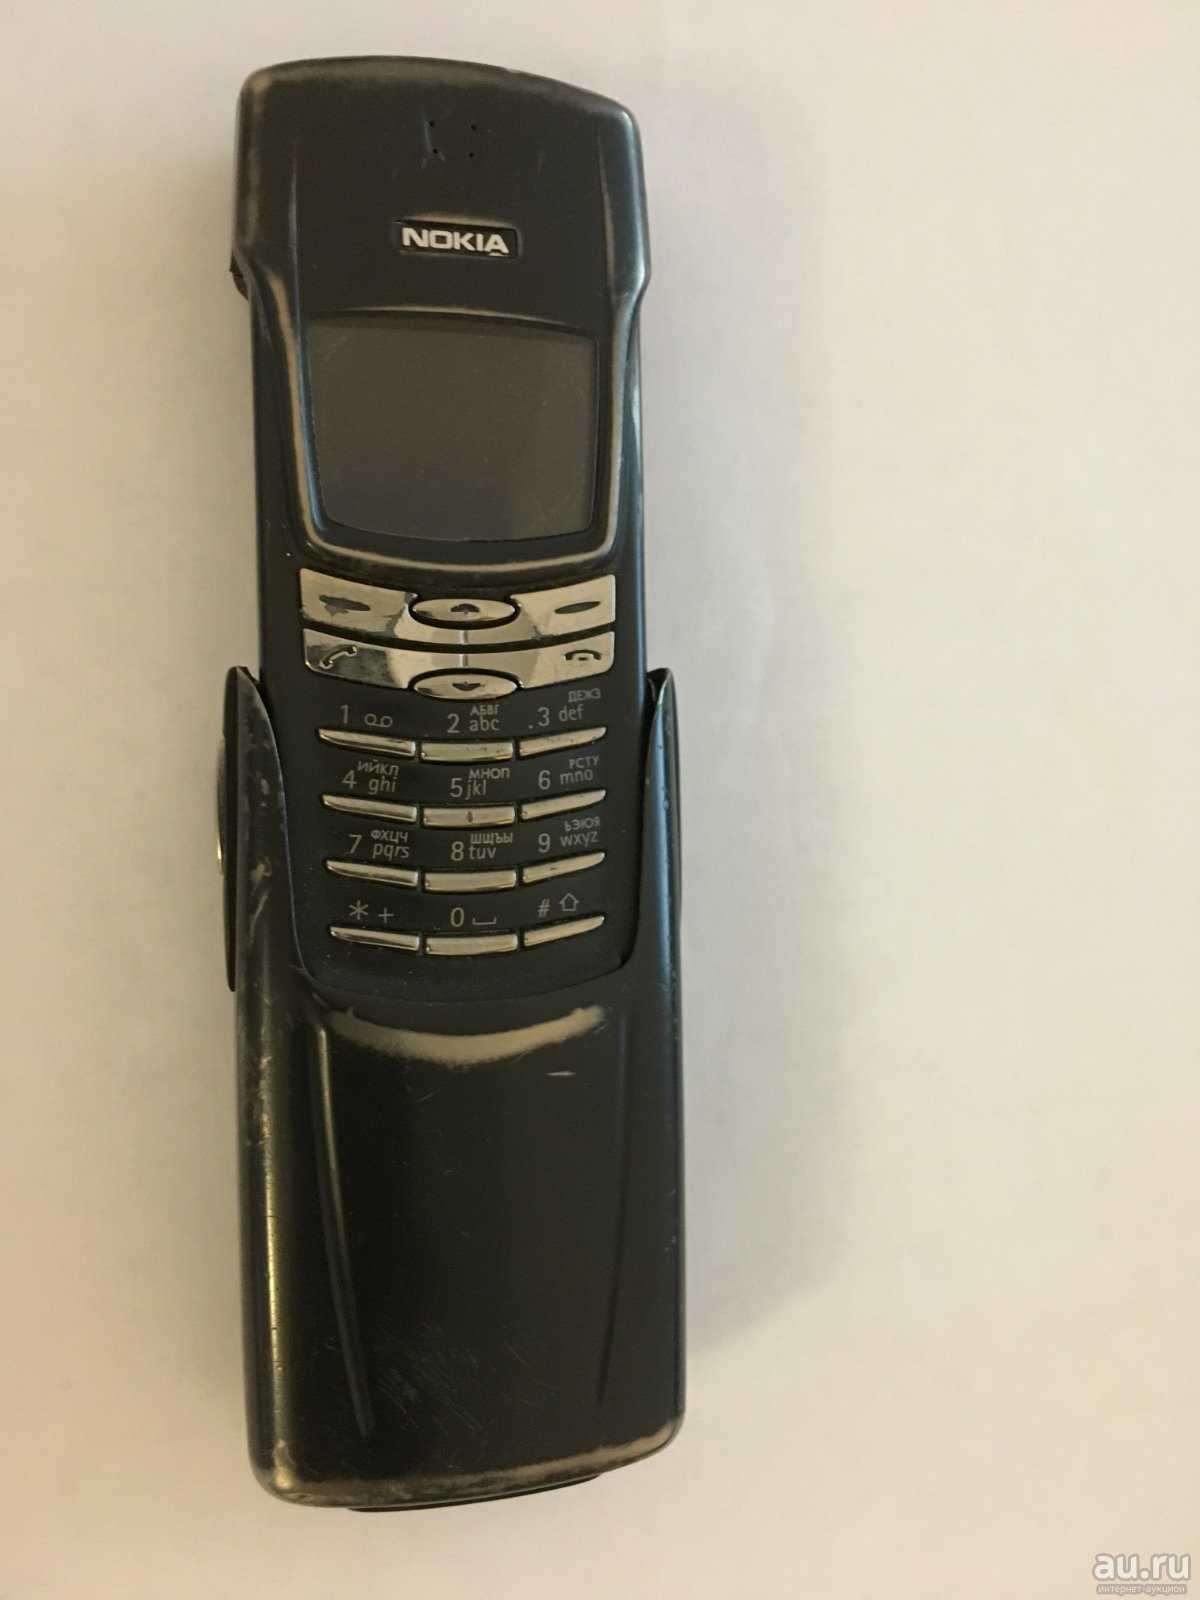 Мобильный телефон Nokia 8910i - подробные характеристики обзоры видео фото Цены в интернет-магазинах где можно купить мобильный телефон Nokia 8910i